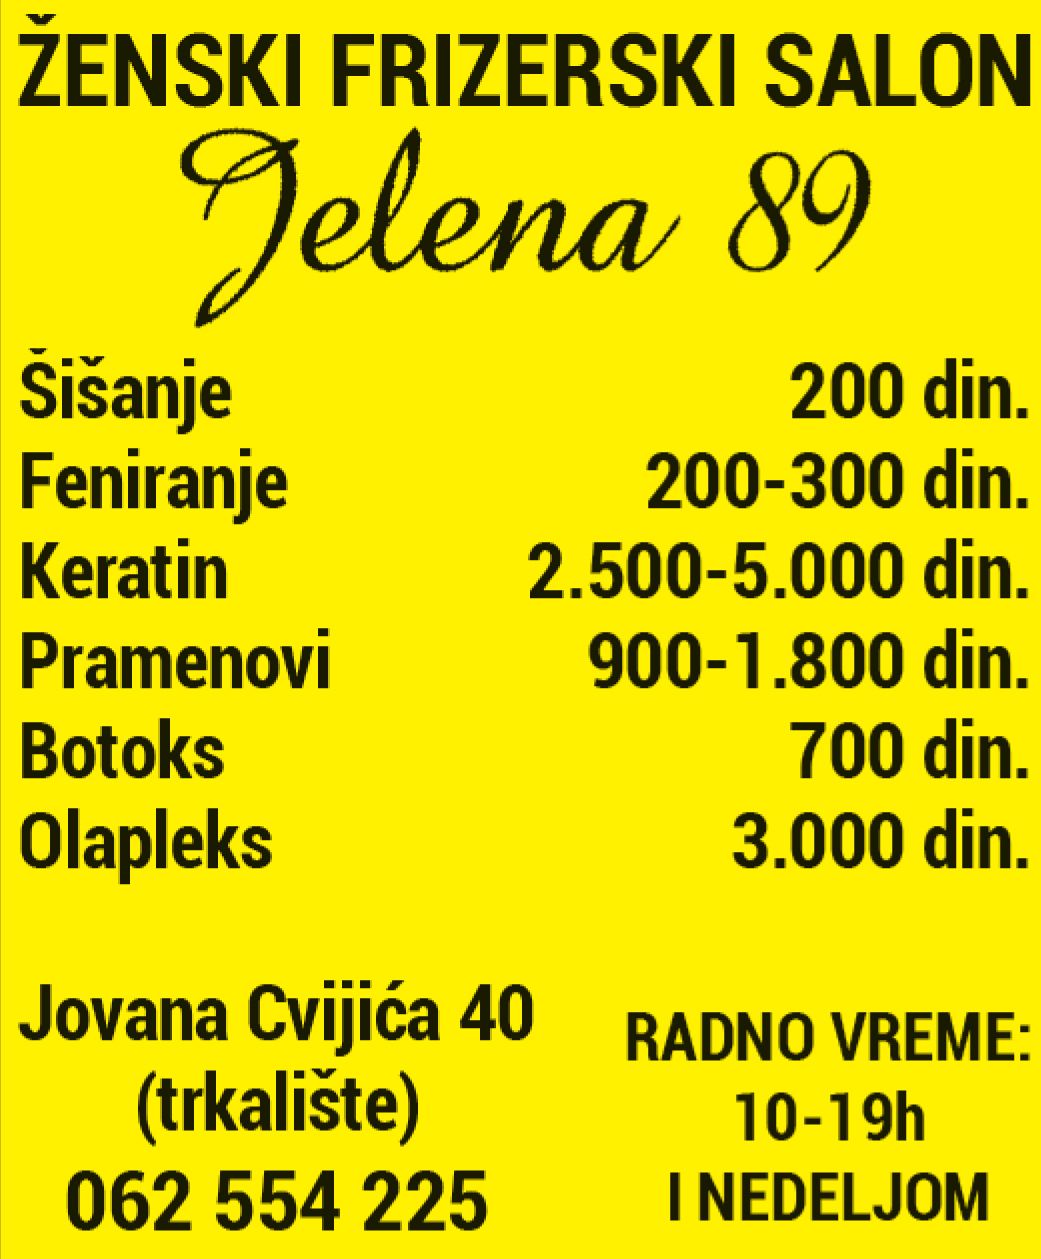 Jelena 89